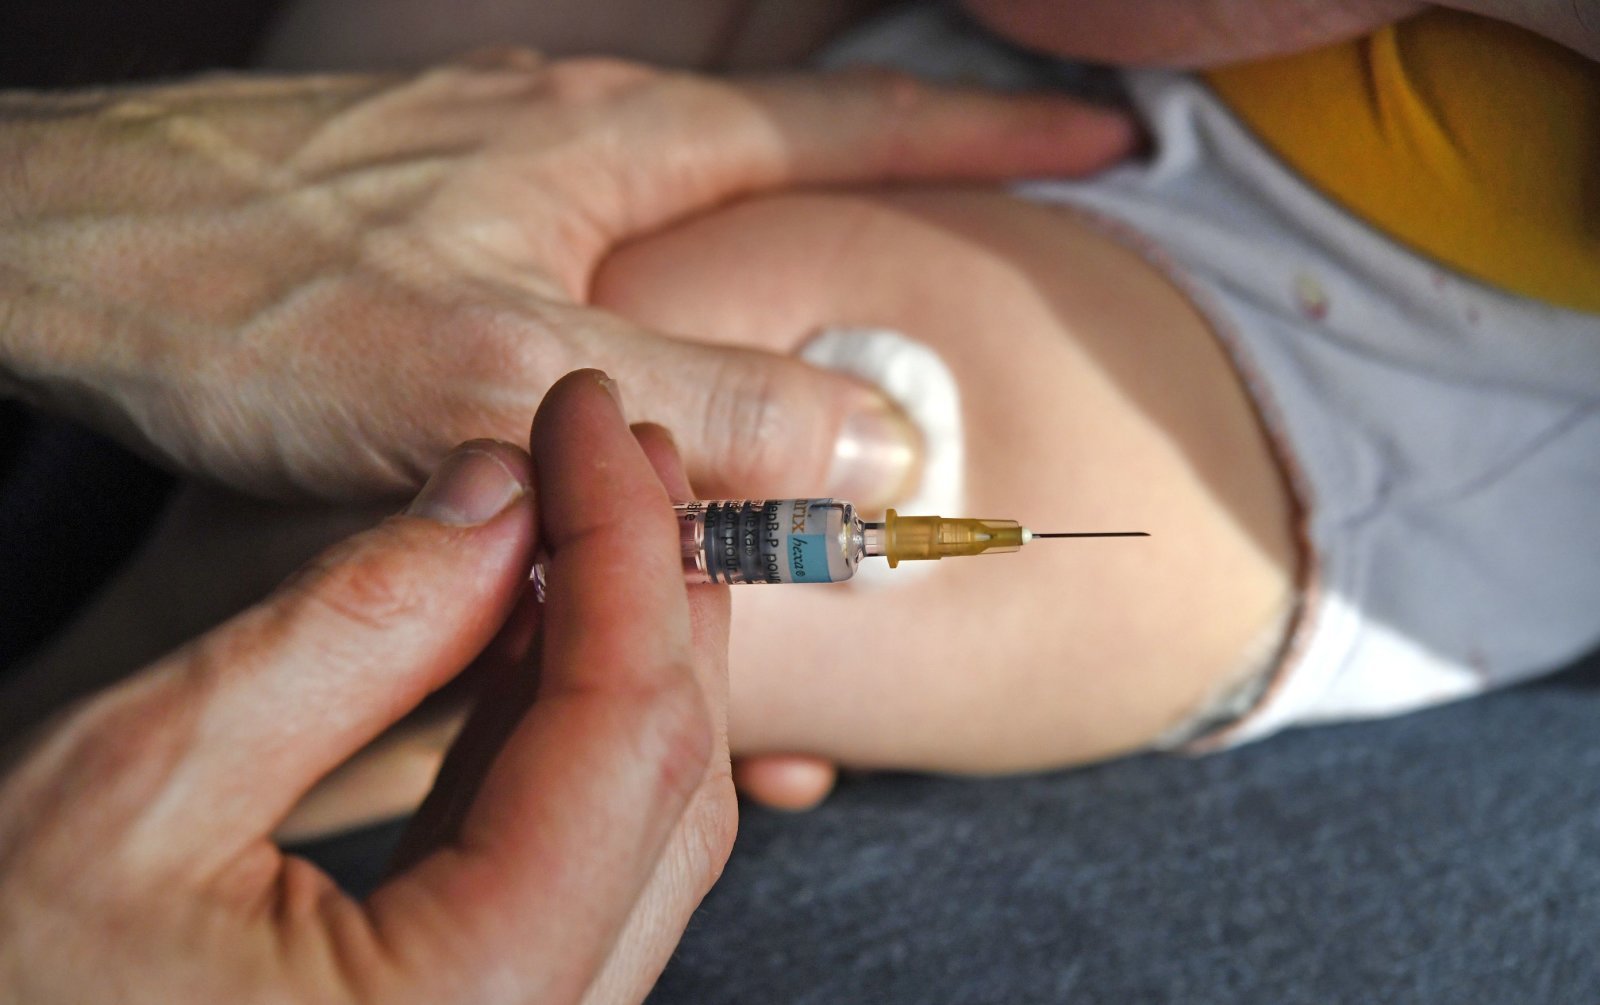 เท่านี้อาจไม่พอ! Facebook ควรใช้มาตรการพิเศษเพื่อจัดการข้อมูลที่ไม่ถูกต้องเกี่ยวกับวัคซีน